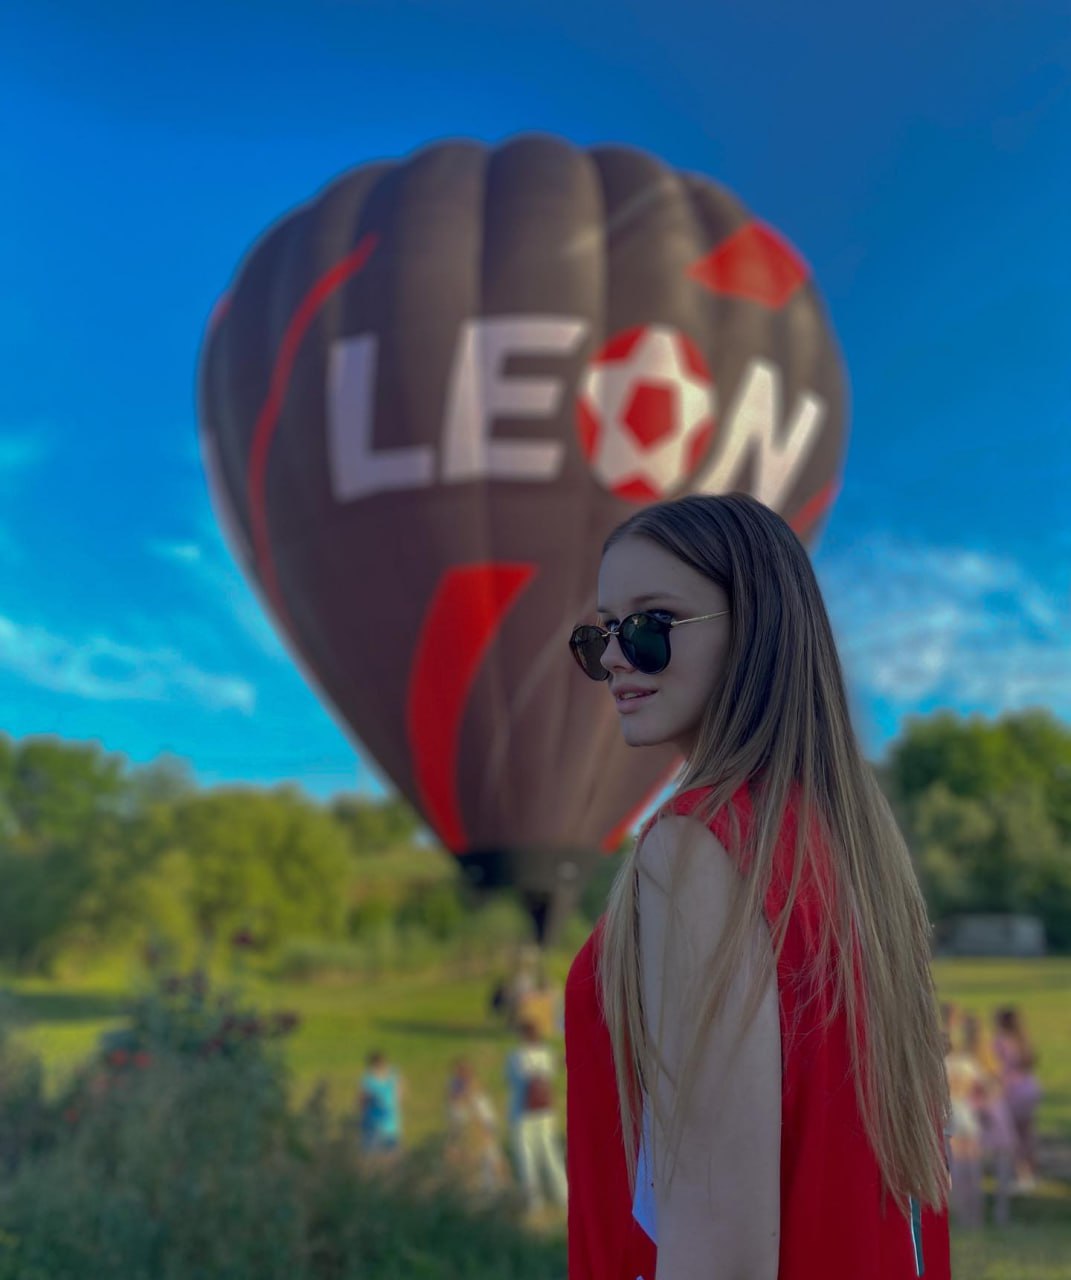 Воздушные шары БК Леон